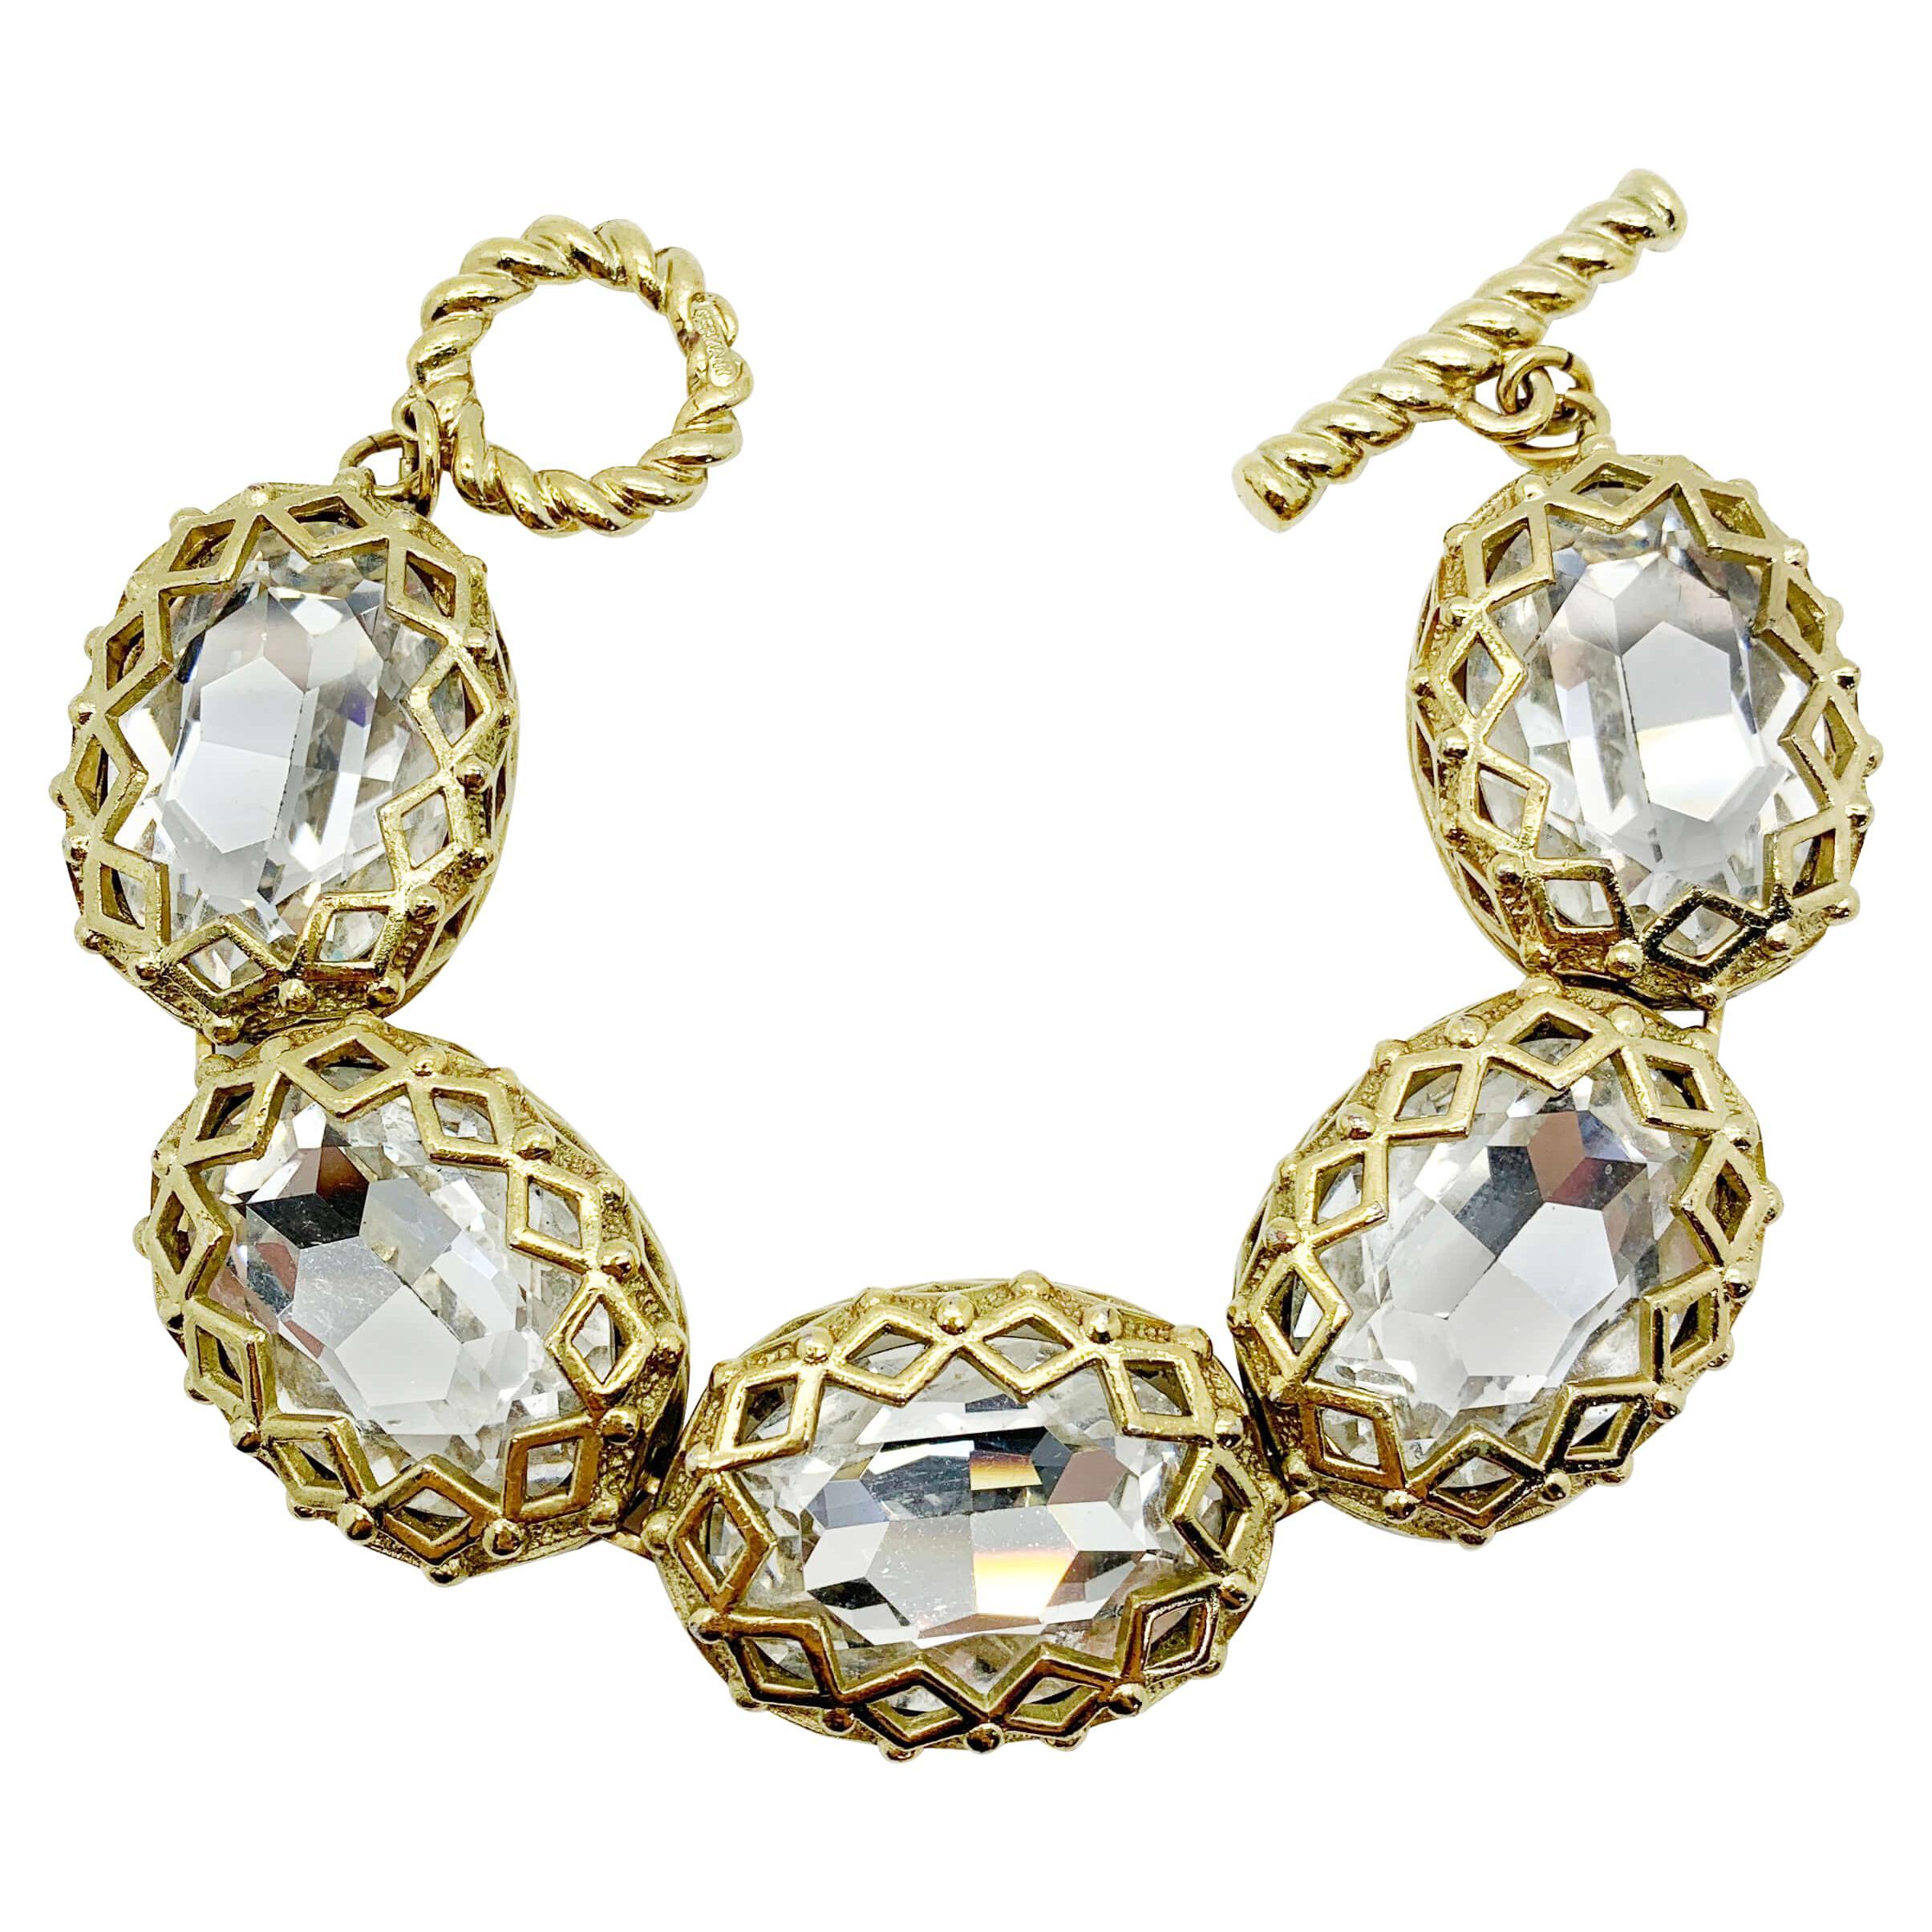 Vintage Christian Dior Crystal Headlight Bracelet 1980s For Sale